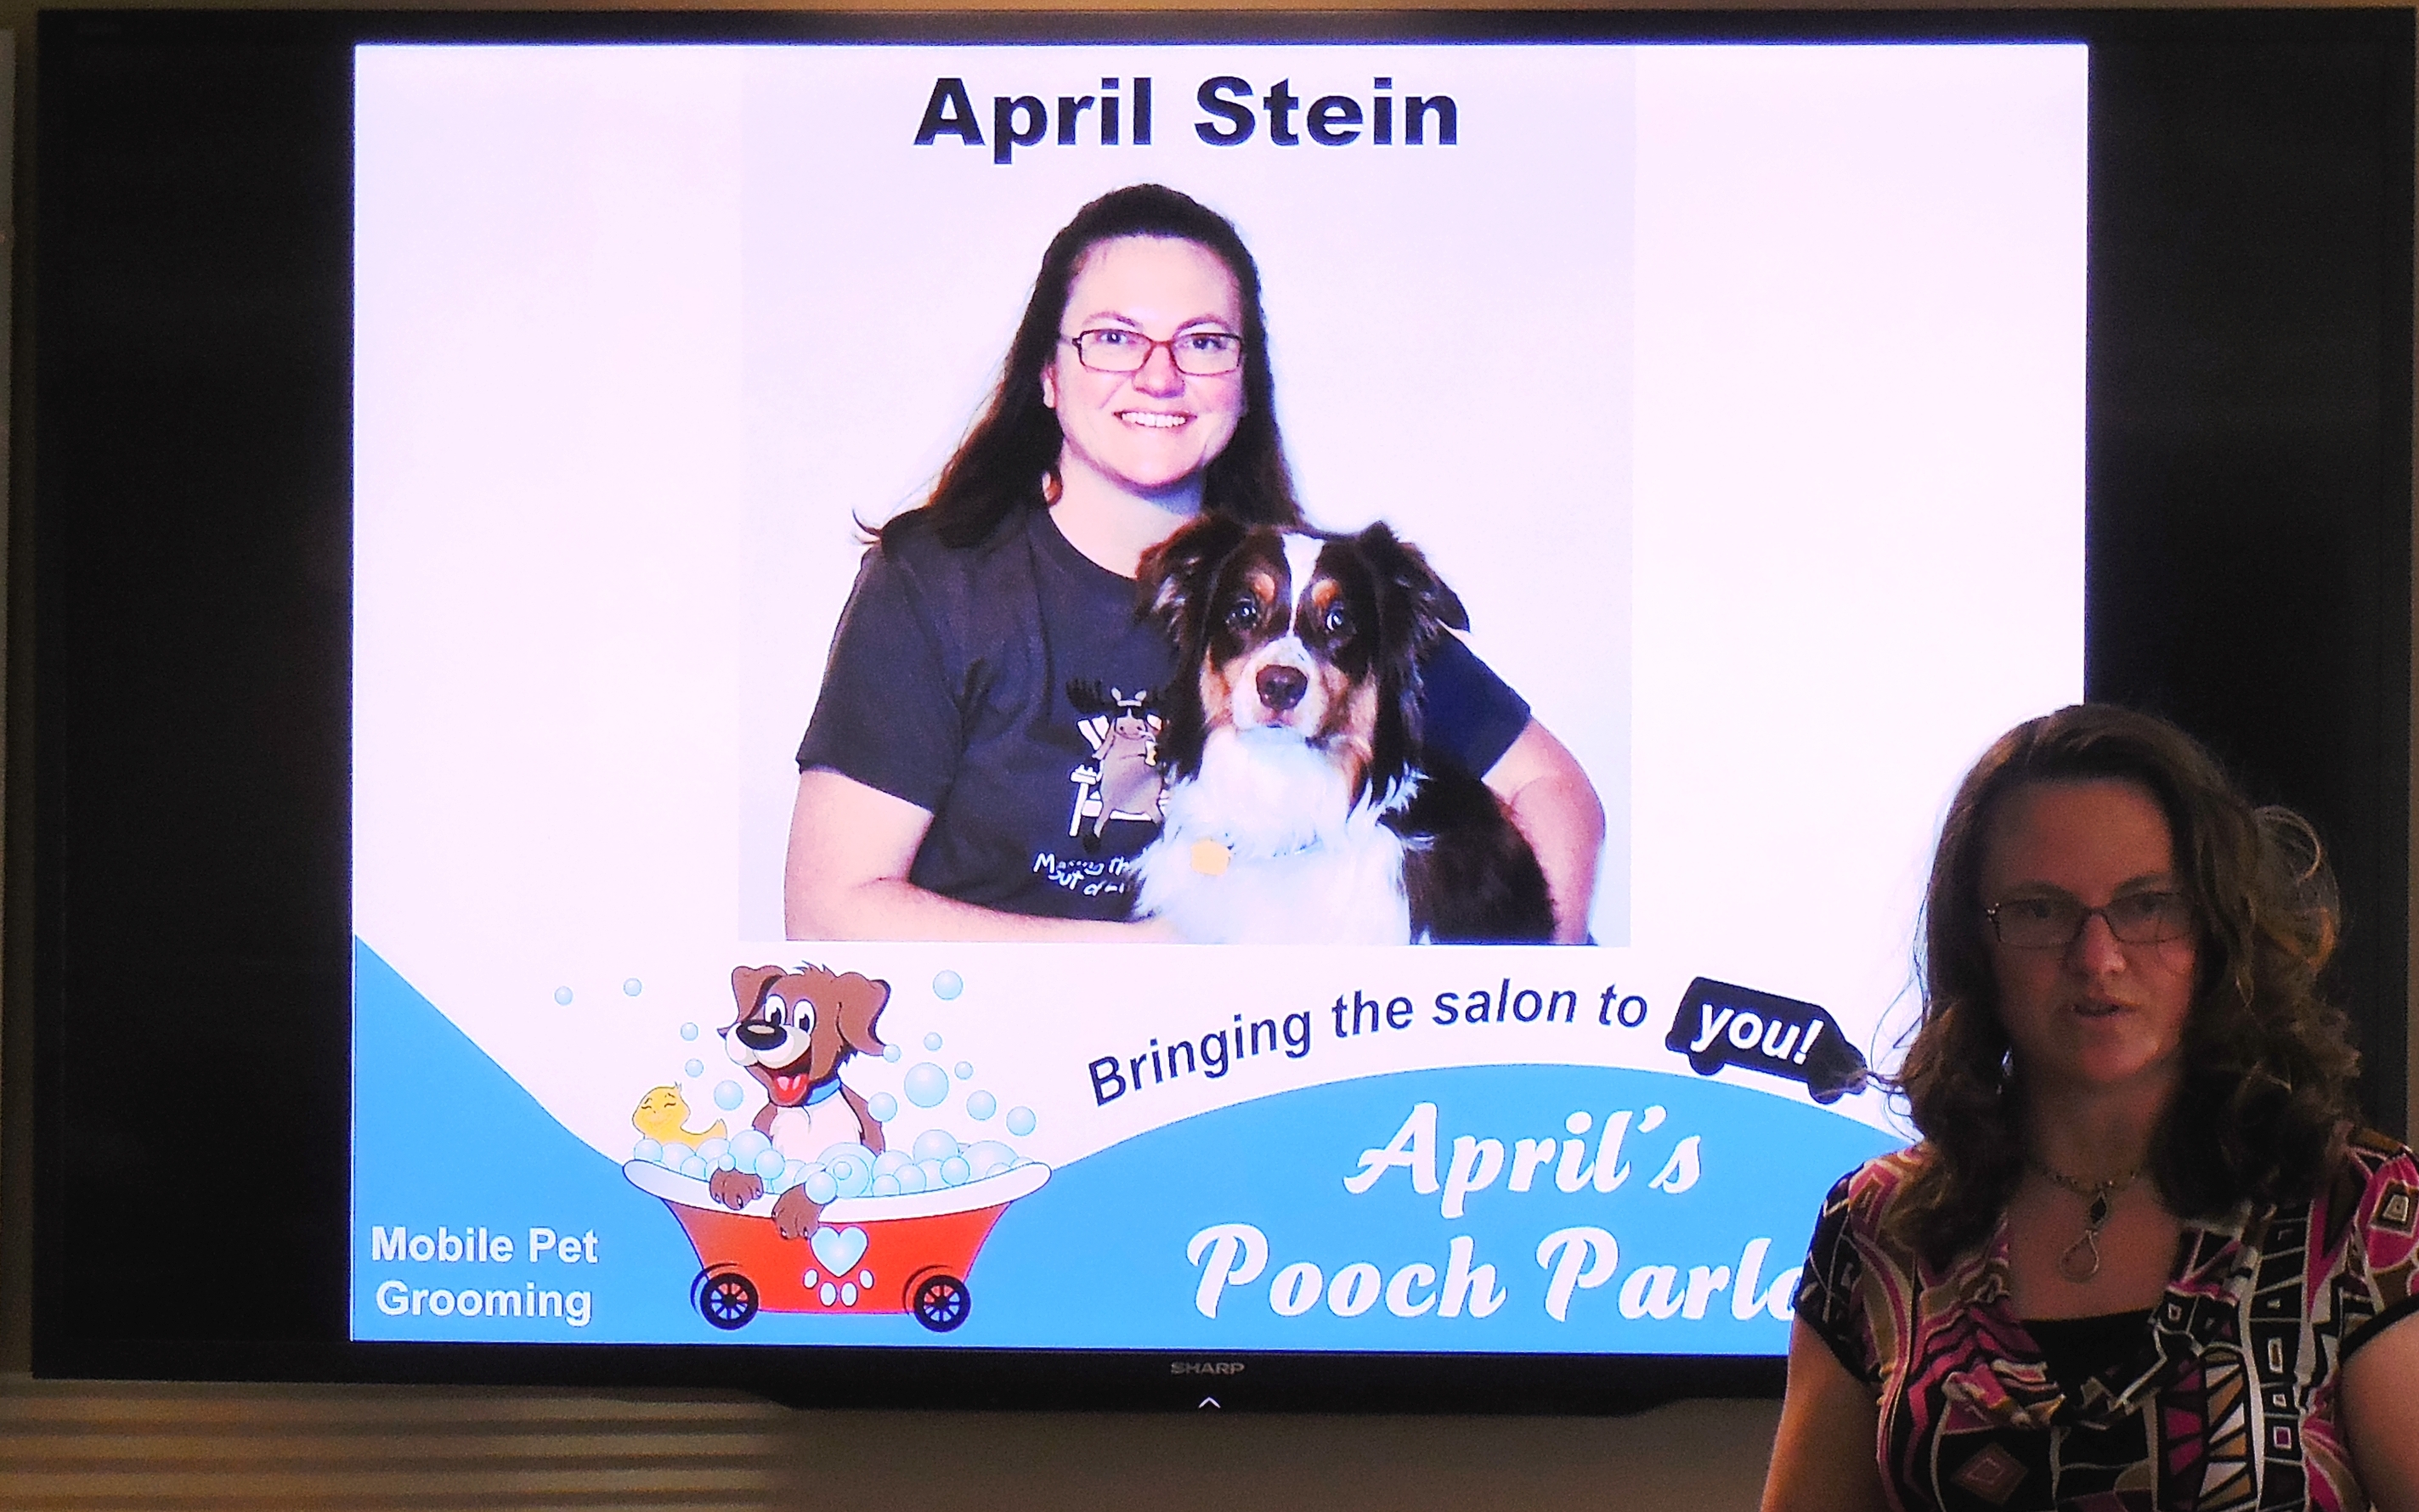 April's Presentation